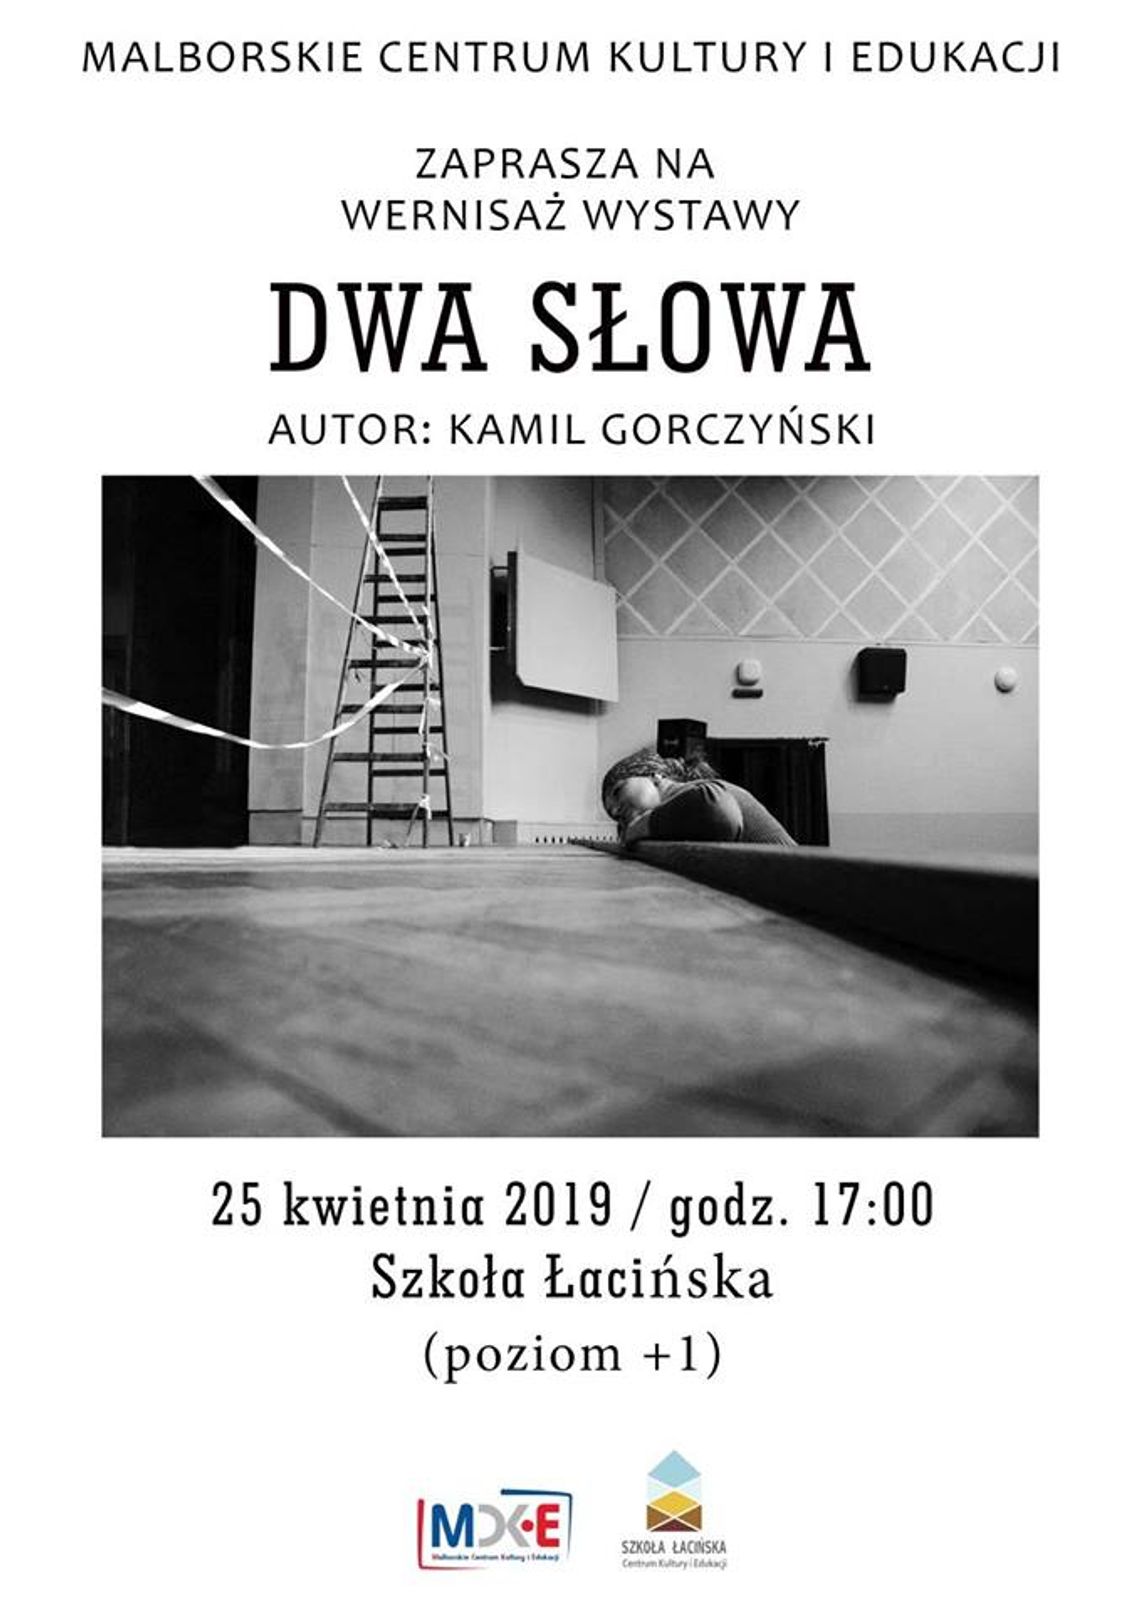 Wernisaż wystawy "Dwa Słowa" Kamila Gorczyńskiego.